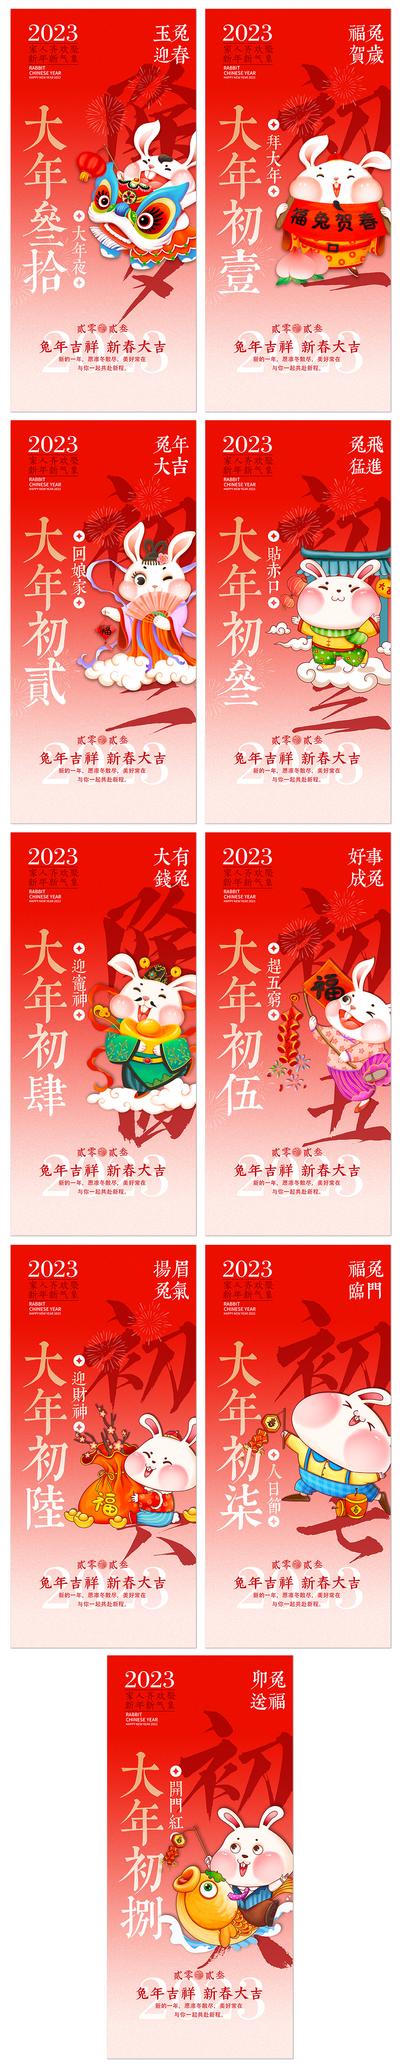 【南门网】海报 地产 中国传统节日 春节  除夕  兔年 回娘家 迎财神  系列  